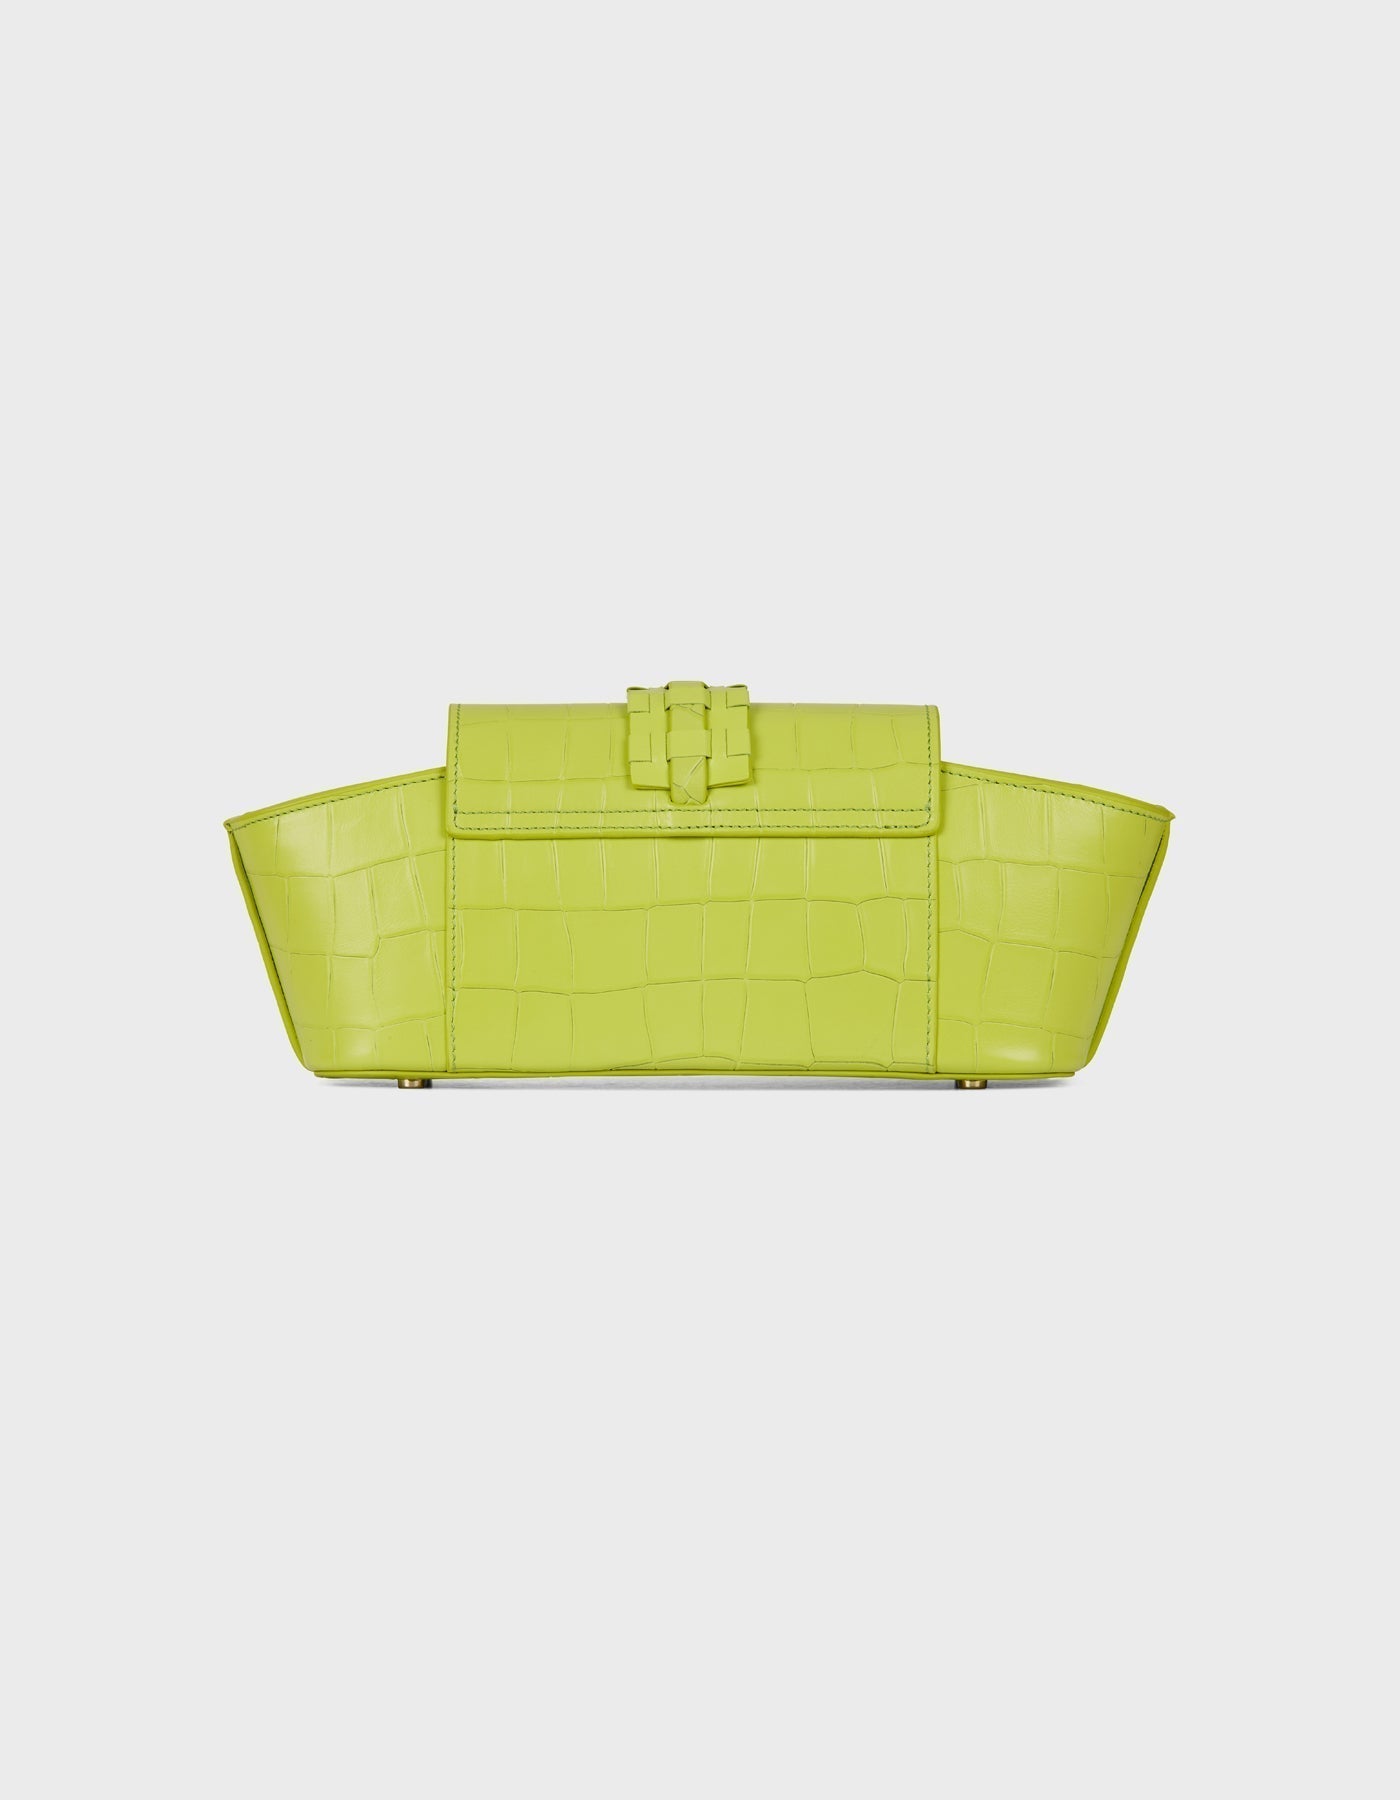 HiVa Atelier | Navis Shoulder Bag Croco Effect Apple | Beautiful and Versatile